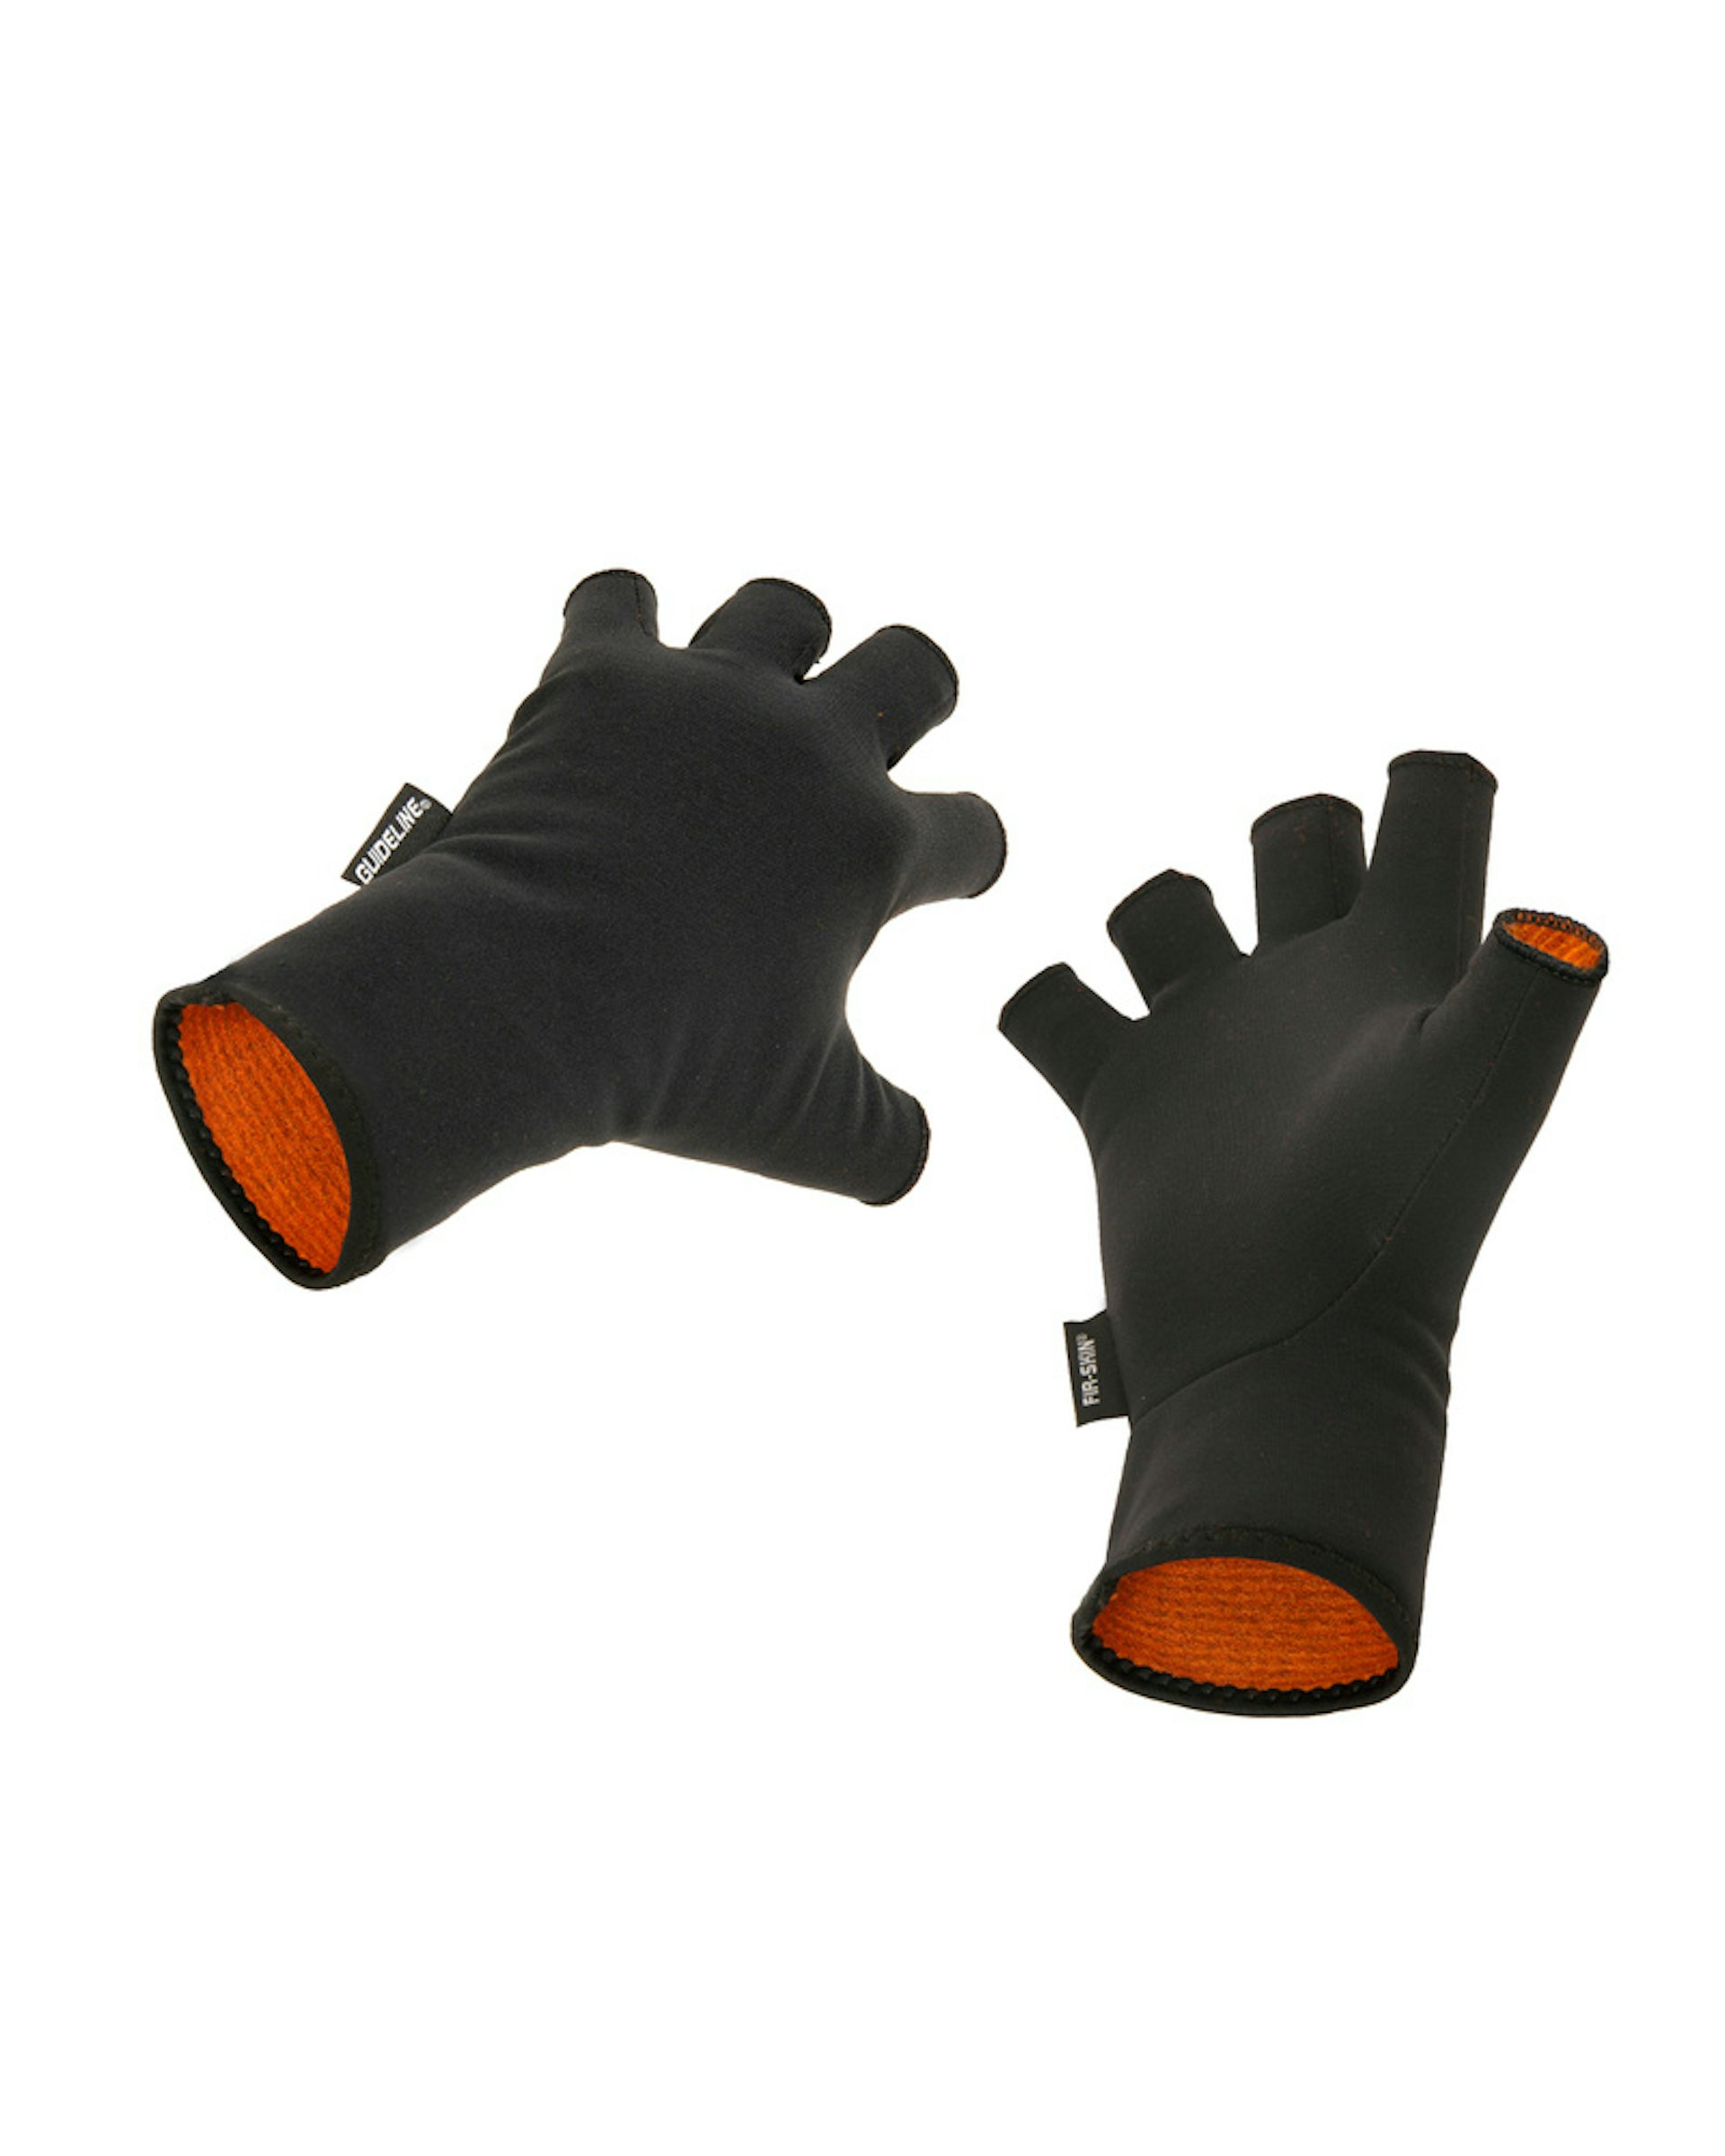 FIR-SKIN CGX Fingerless Gloves XXL (bild 1 av 1)